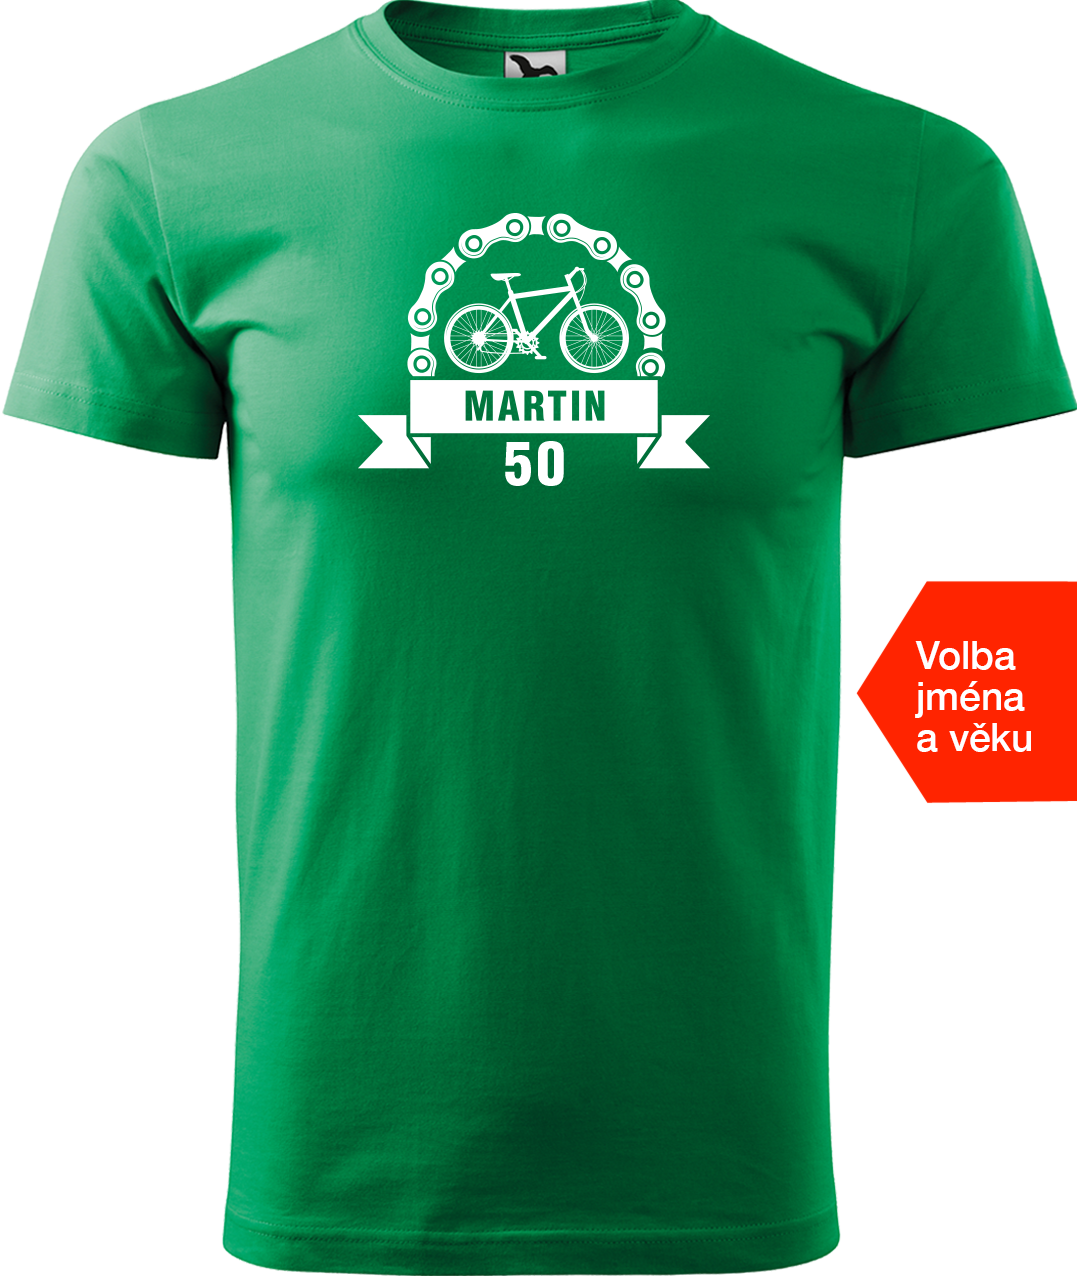 Pánské tričko pro cyklistu se jménem a věkem - Blahopřání Velikost: 4XL, Barva: Středně zelená (16)